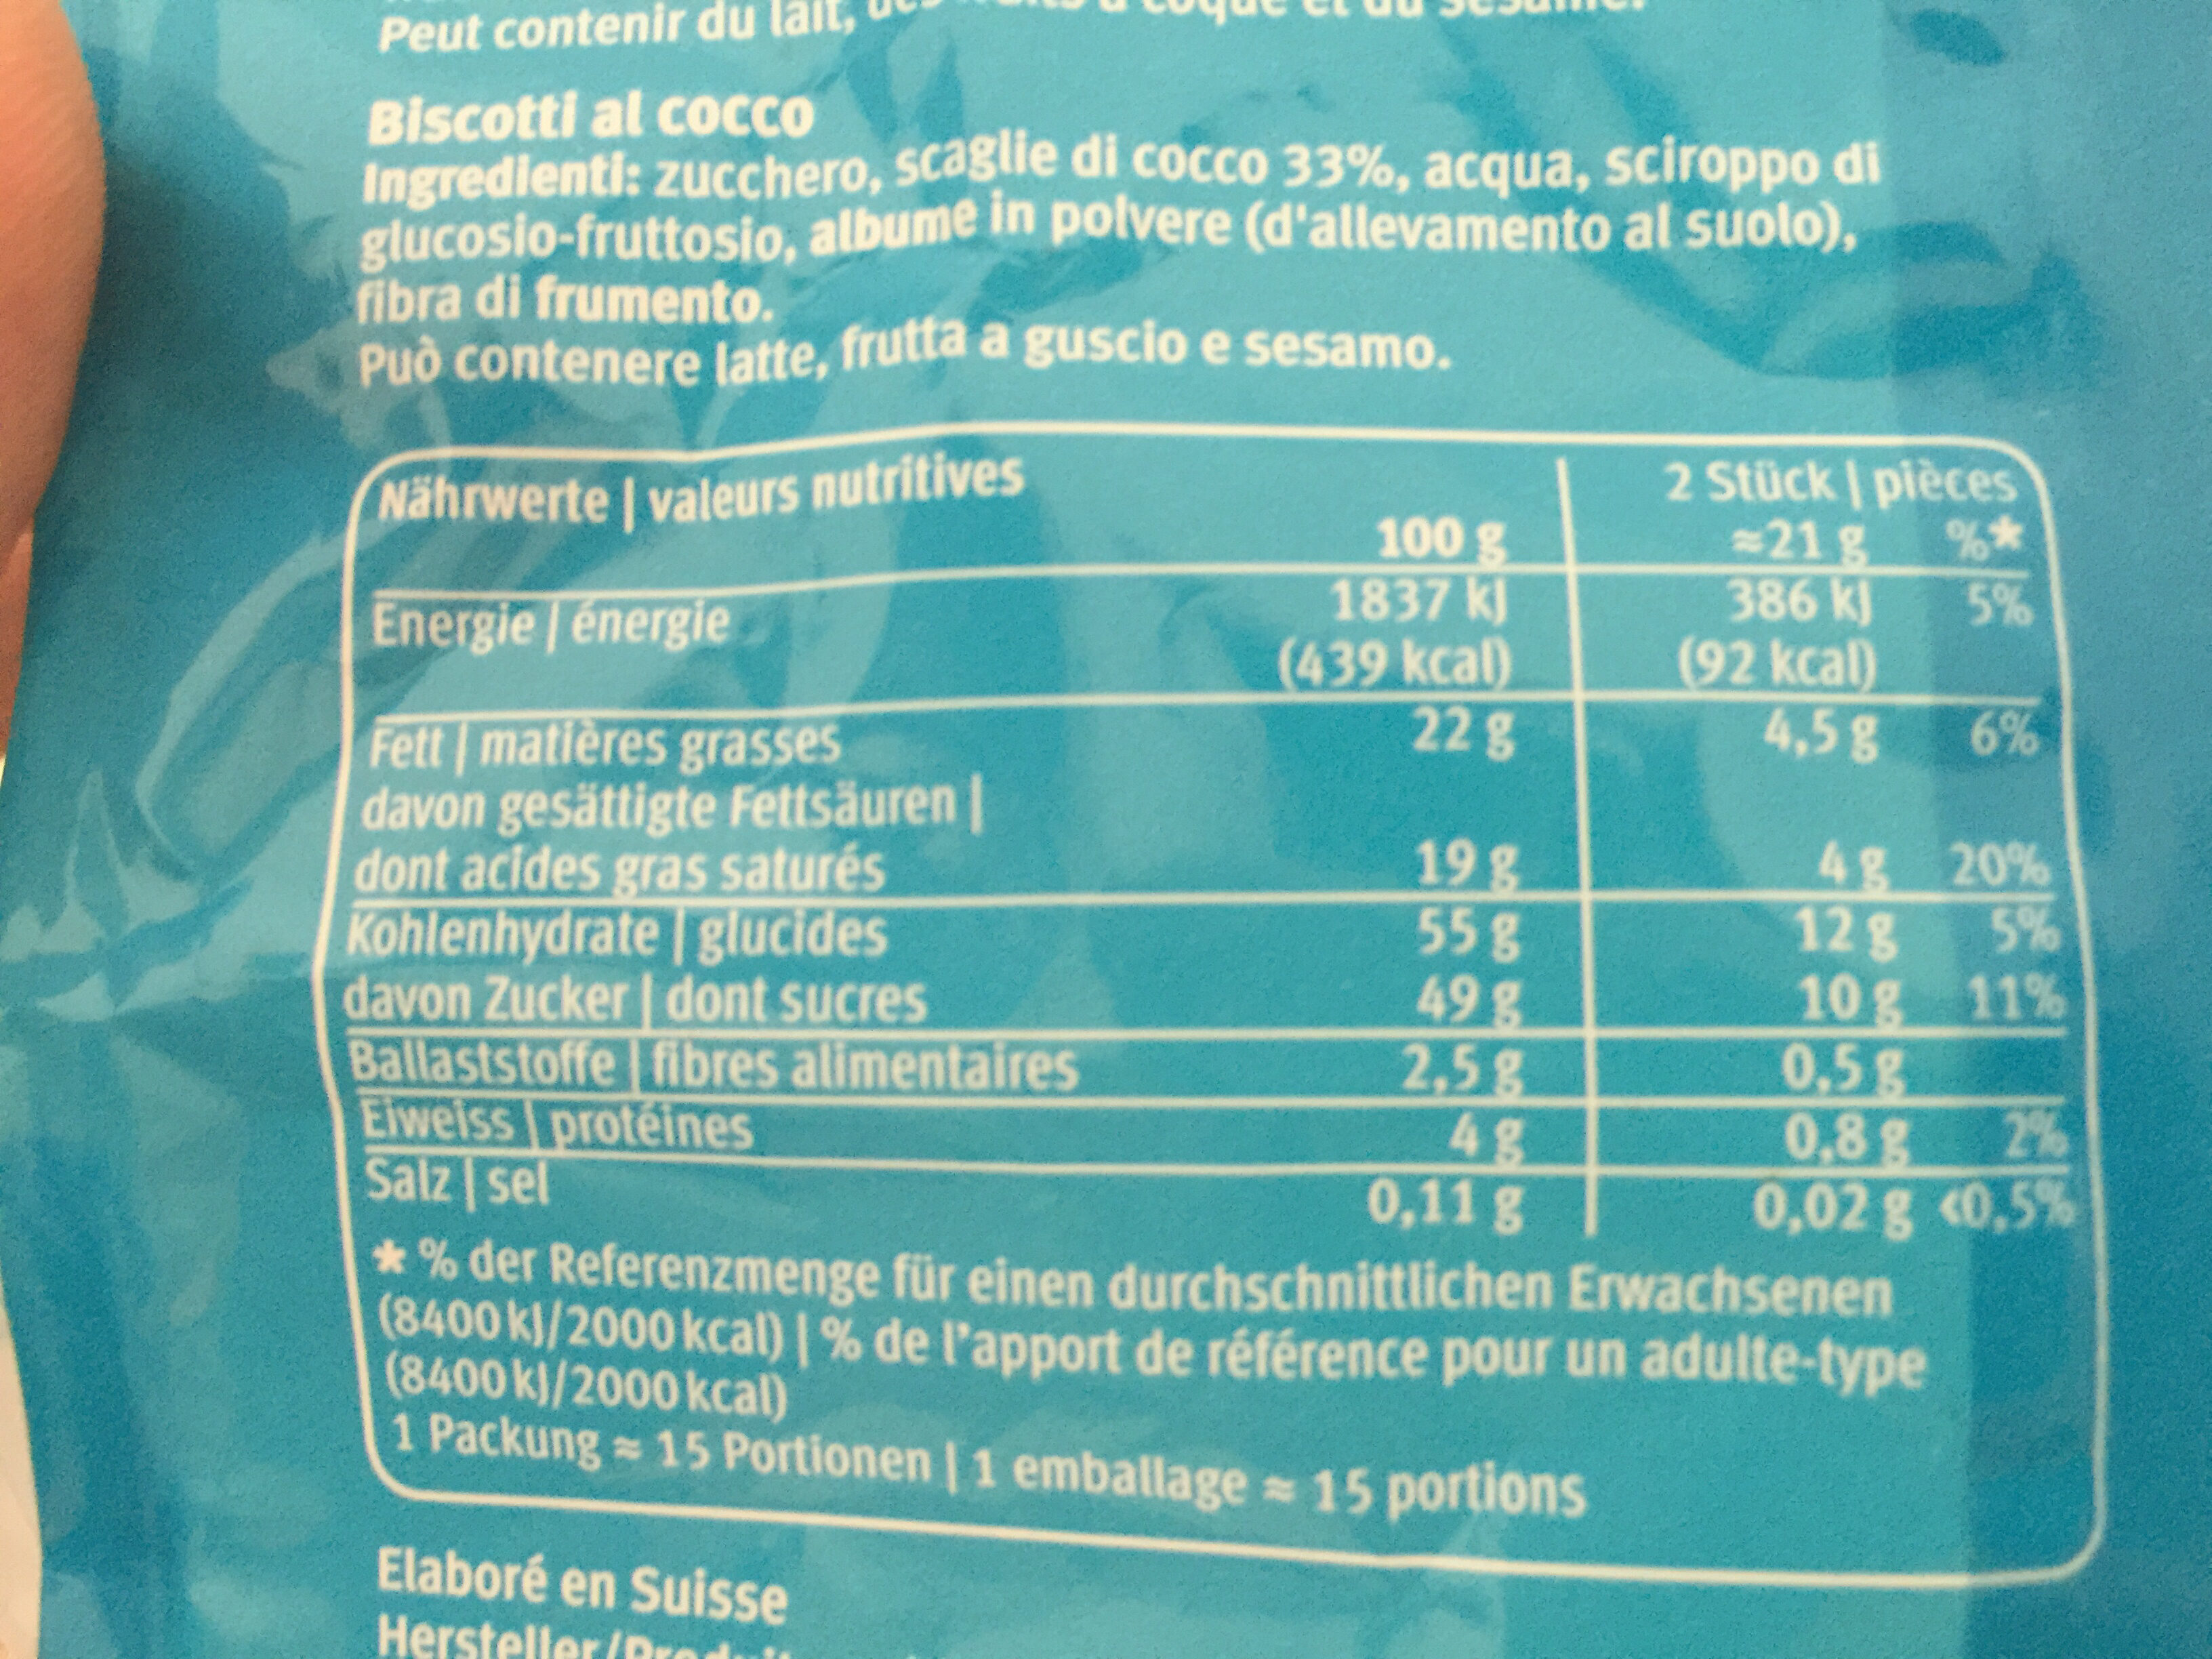 Petits Macarons à la Noix de Coco - Nutrition facts - fr